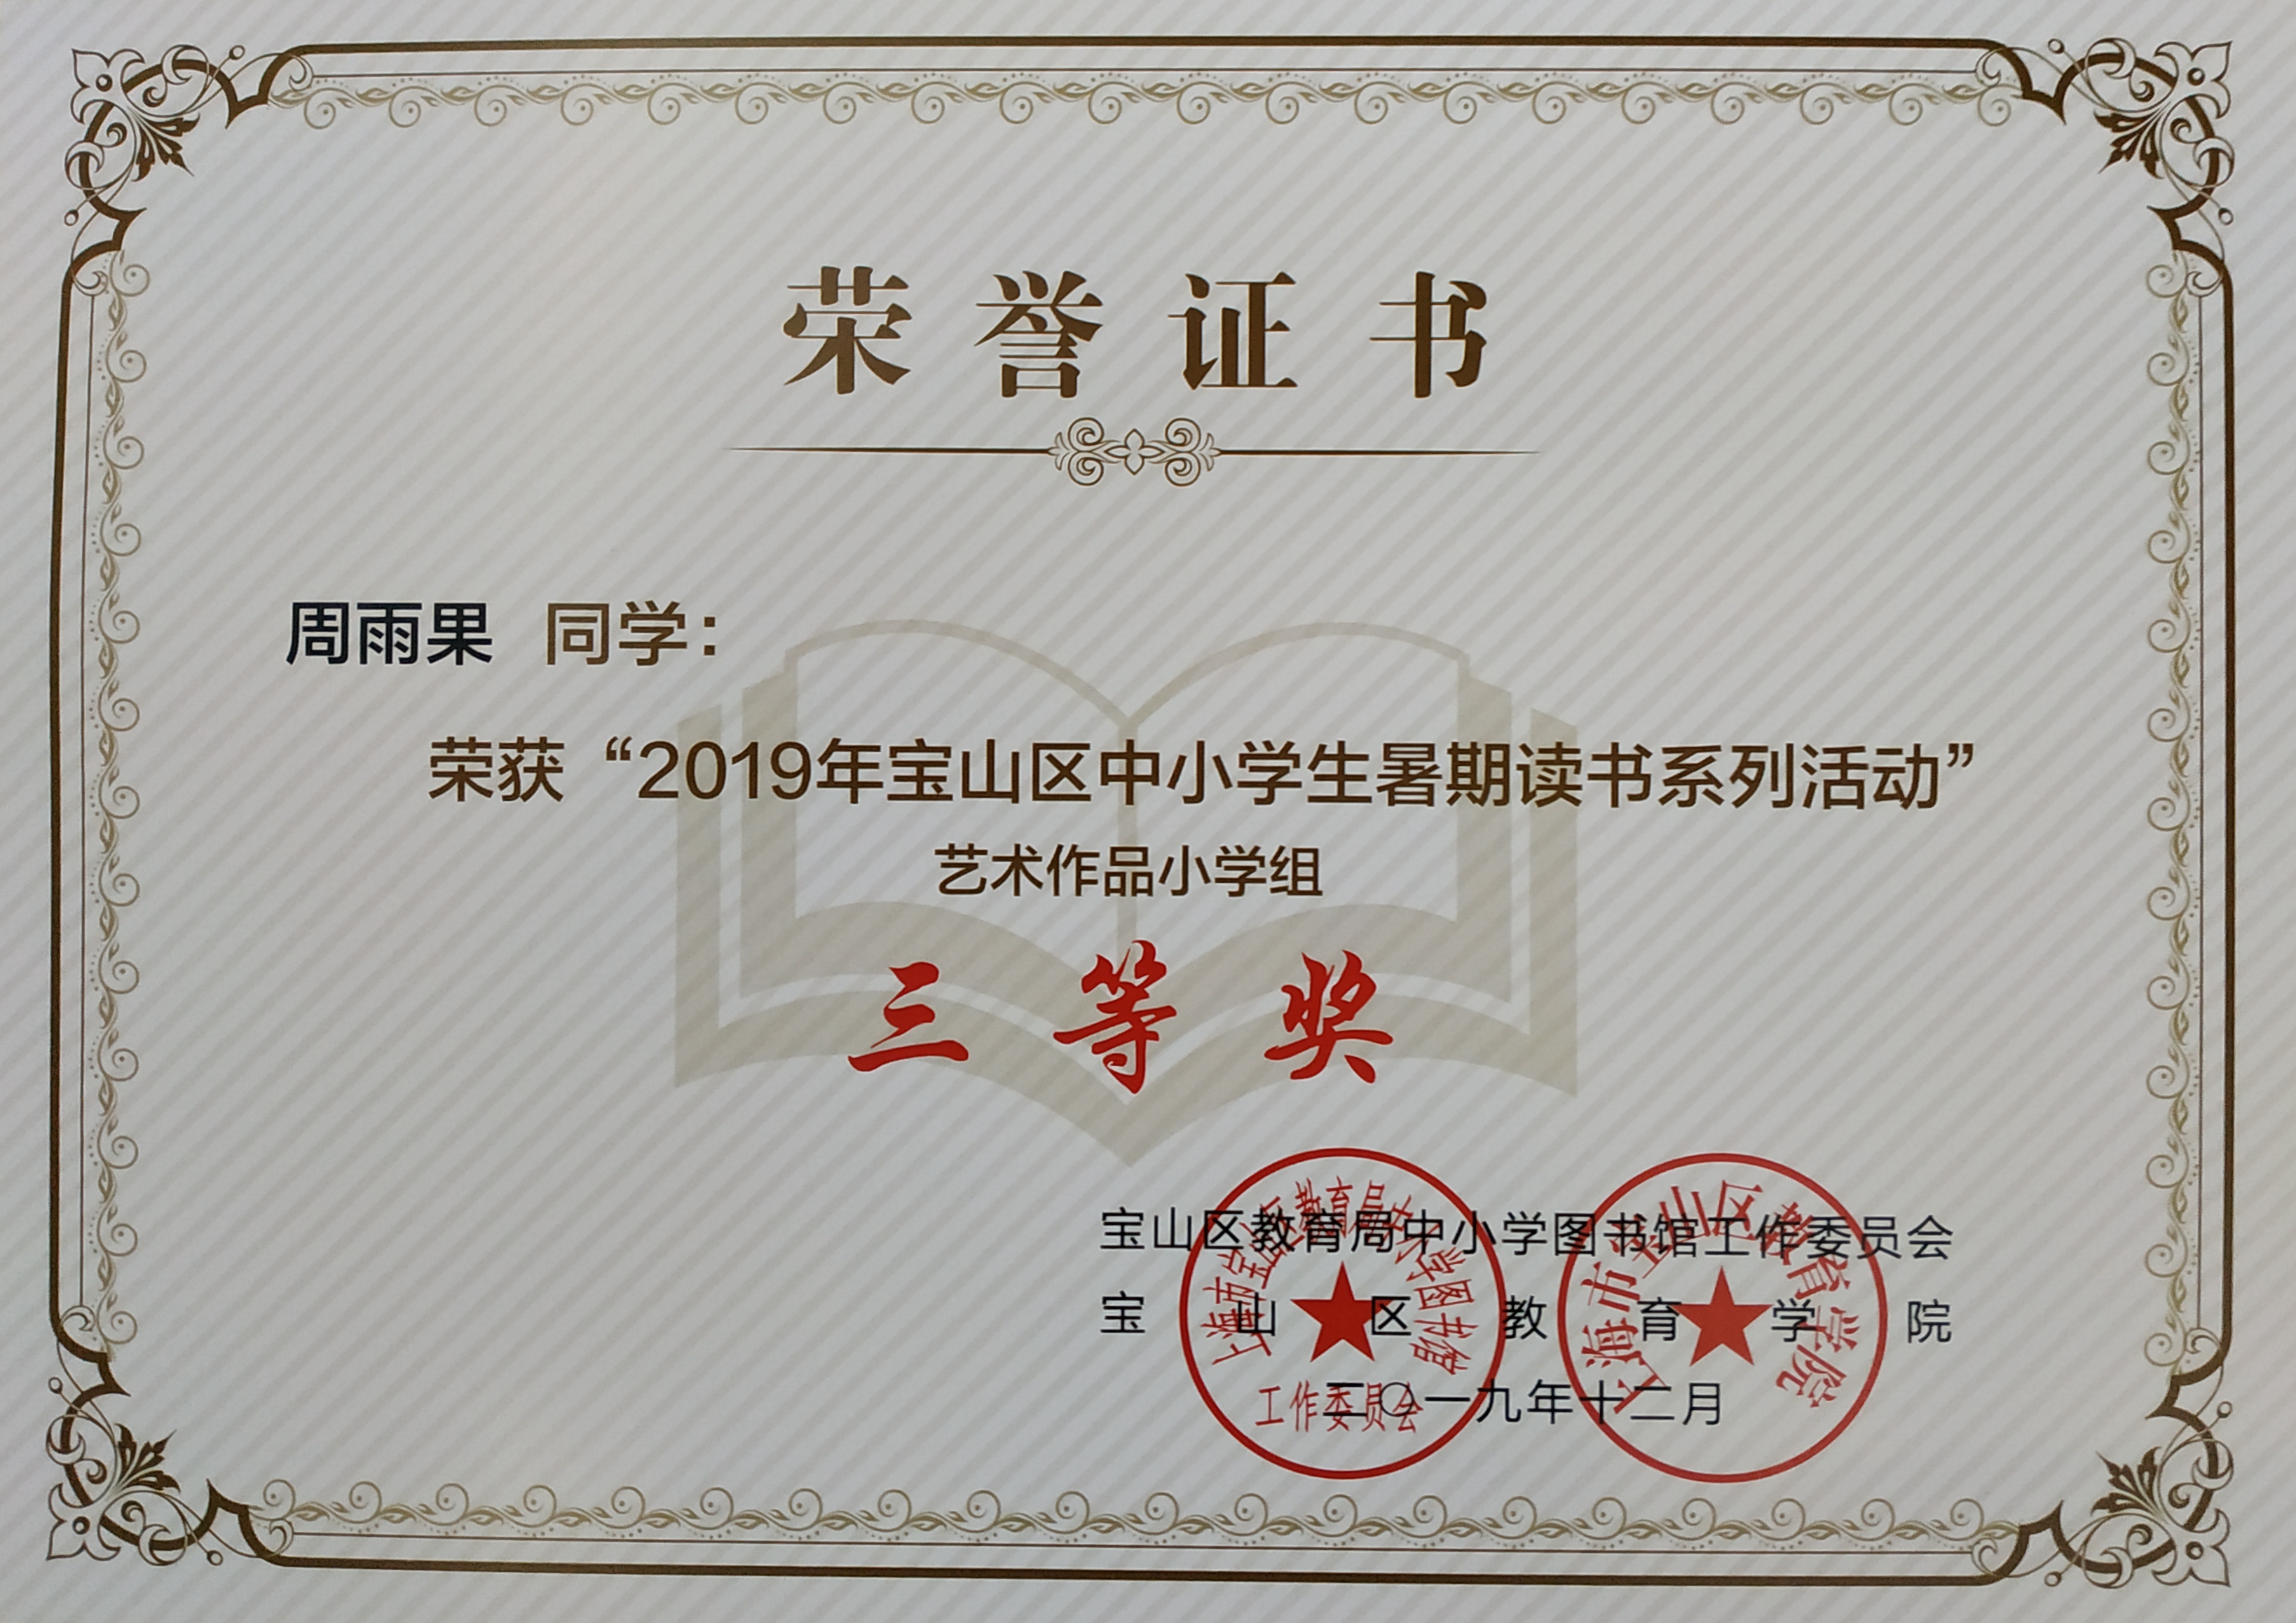 2019年暑期征文活动三等奖获奖证书